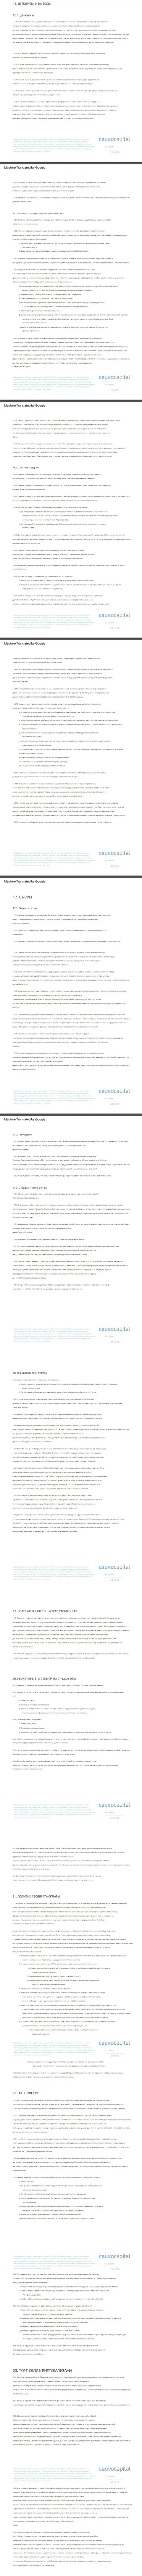 3 часть клиентского соглашения форекс-брокерской компании Cauvo Capital